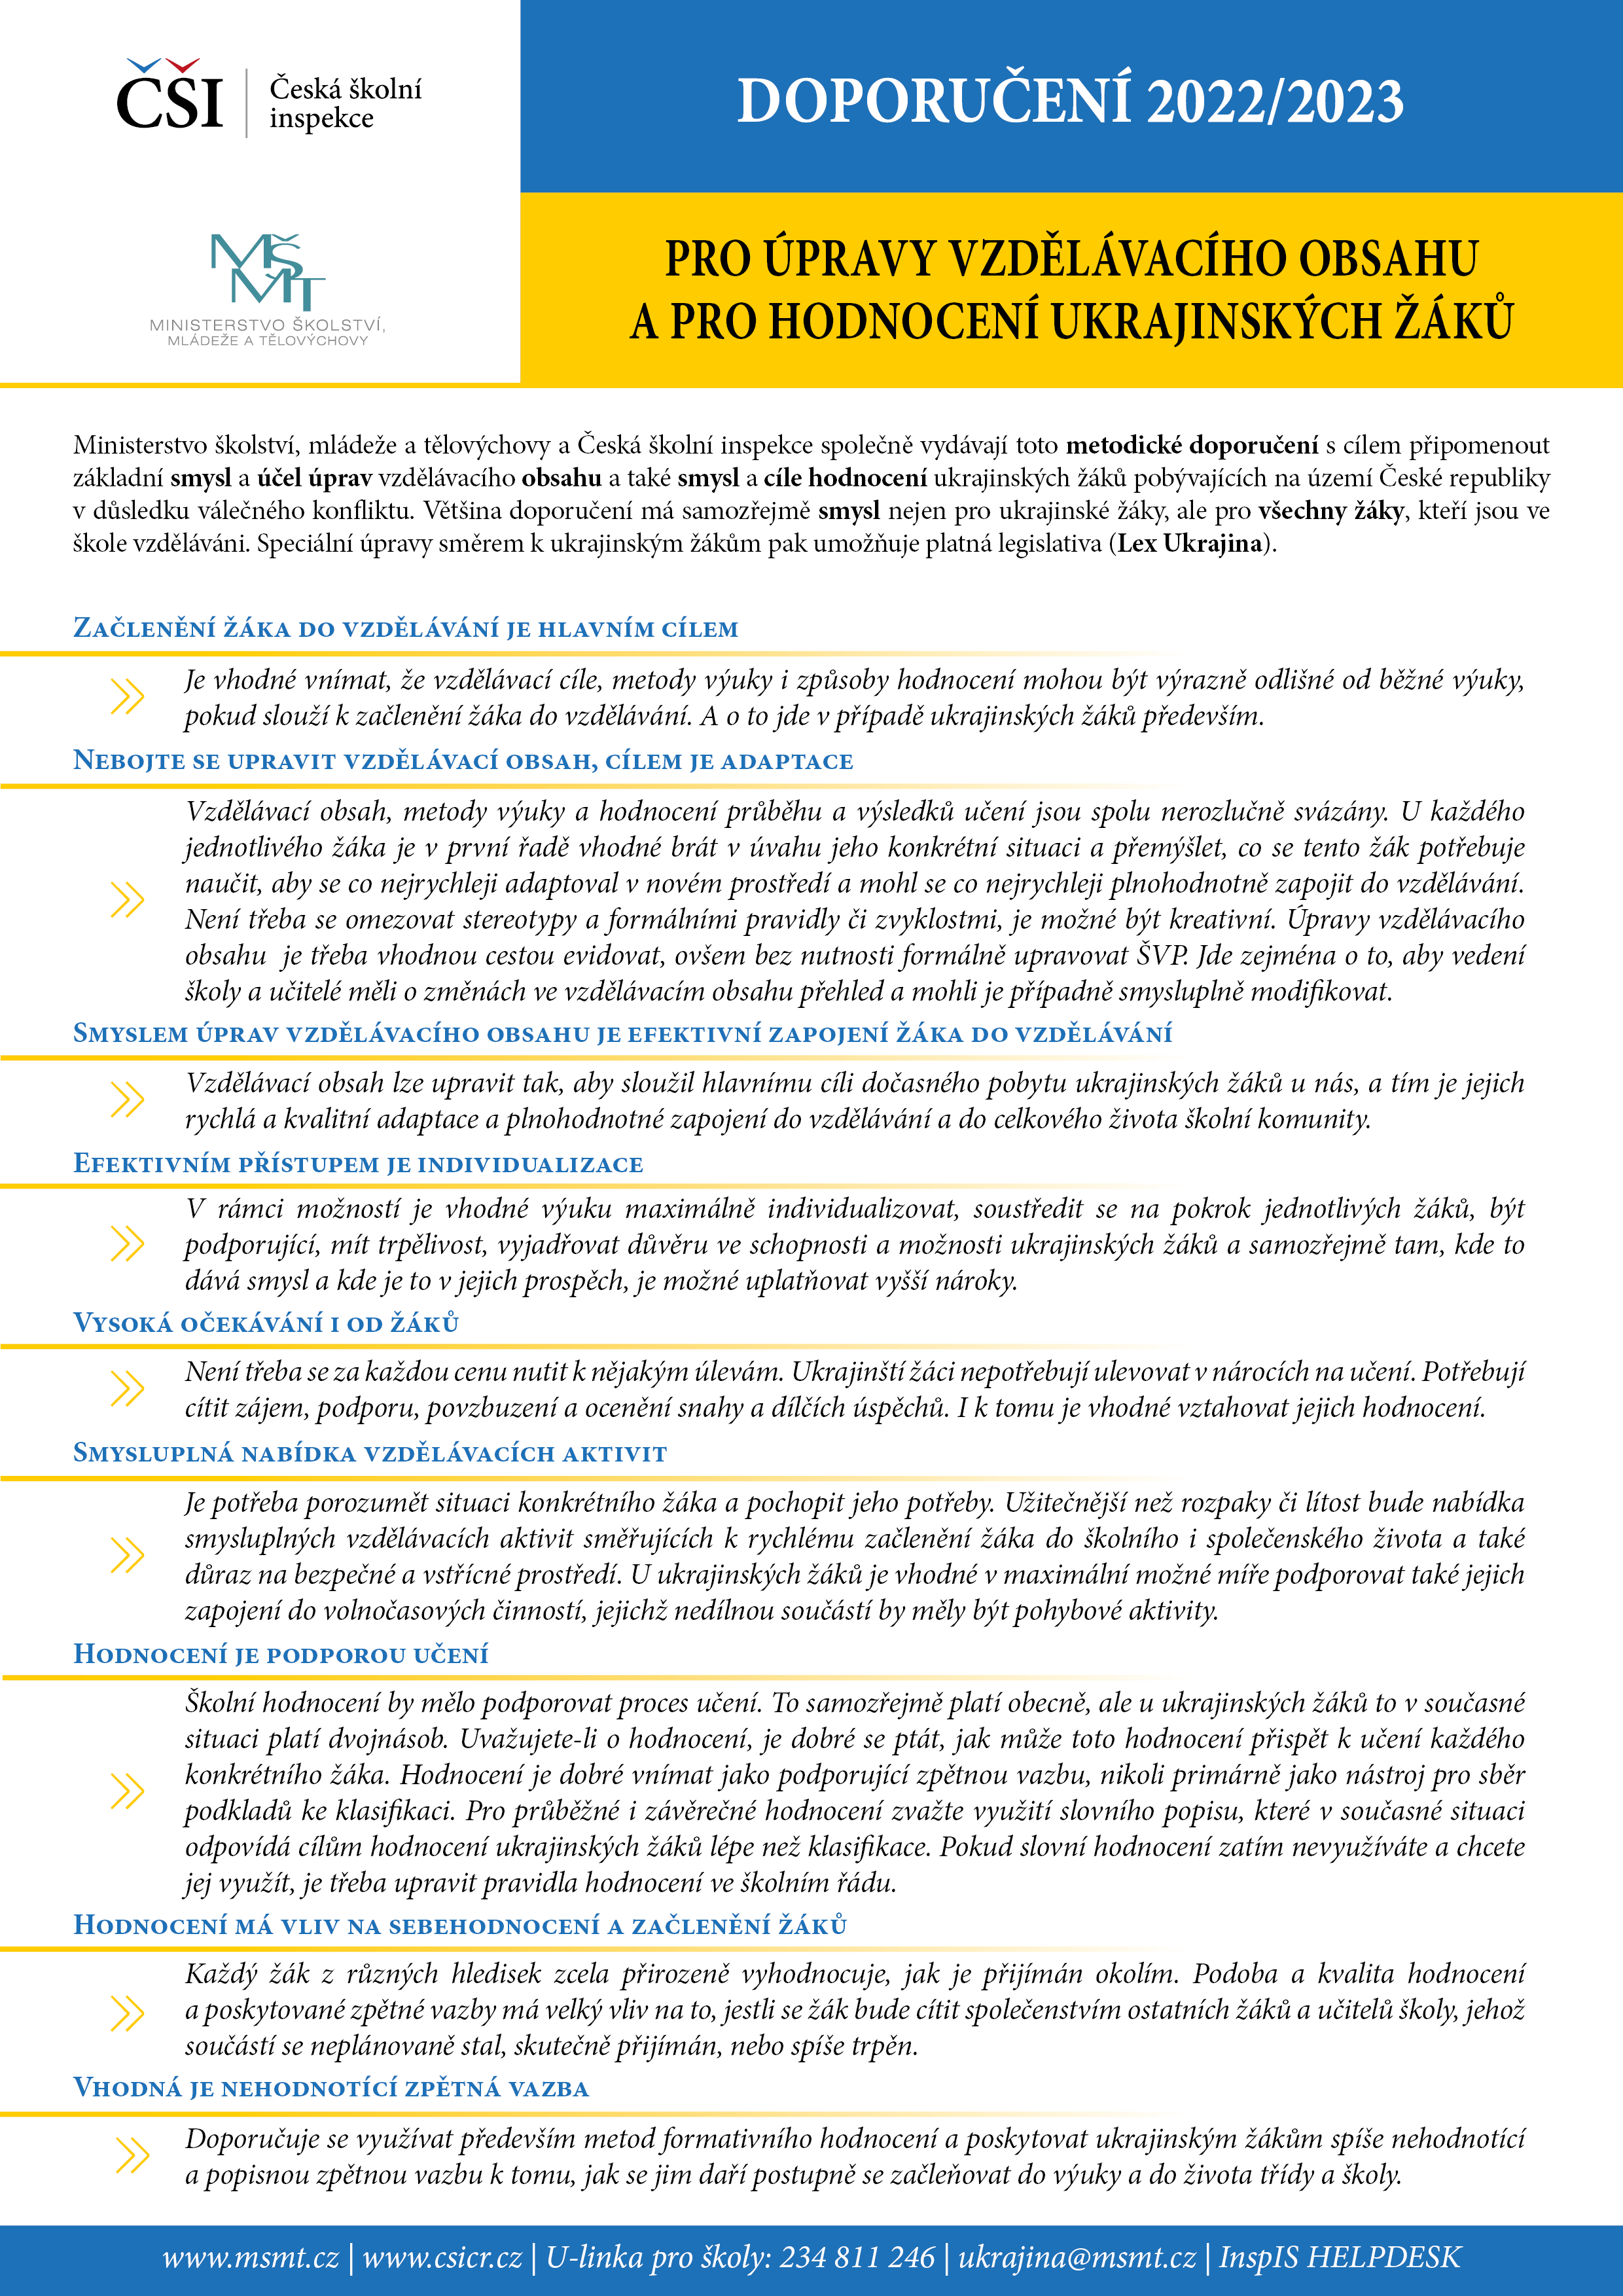 Doporučení pro úpravy vzdělávacího obsahu a hodnocení ukrajinských žáků